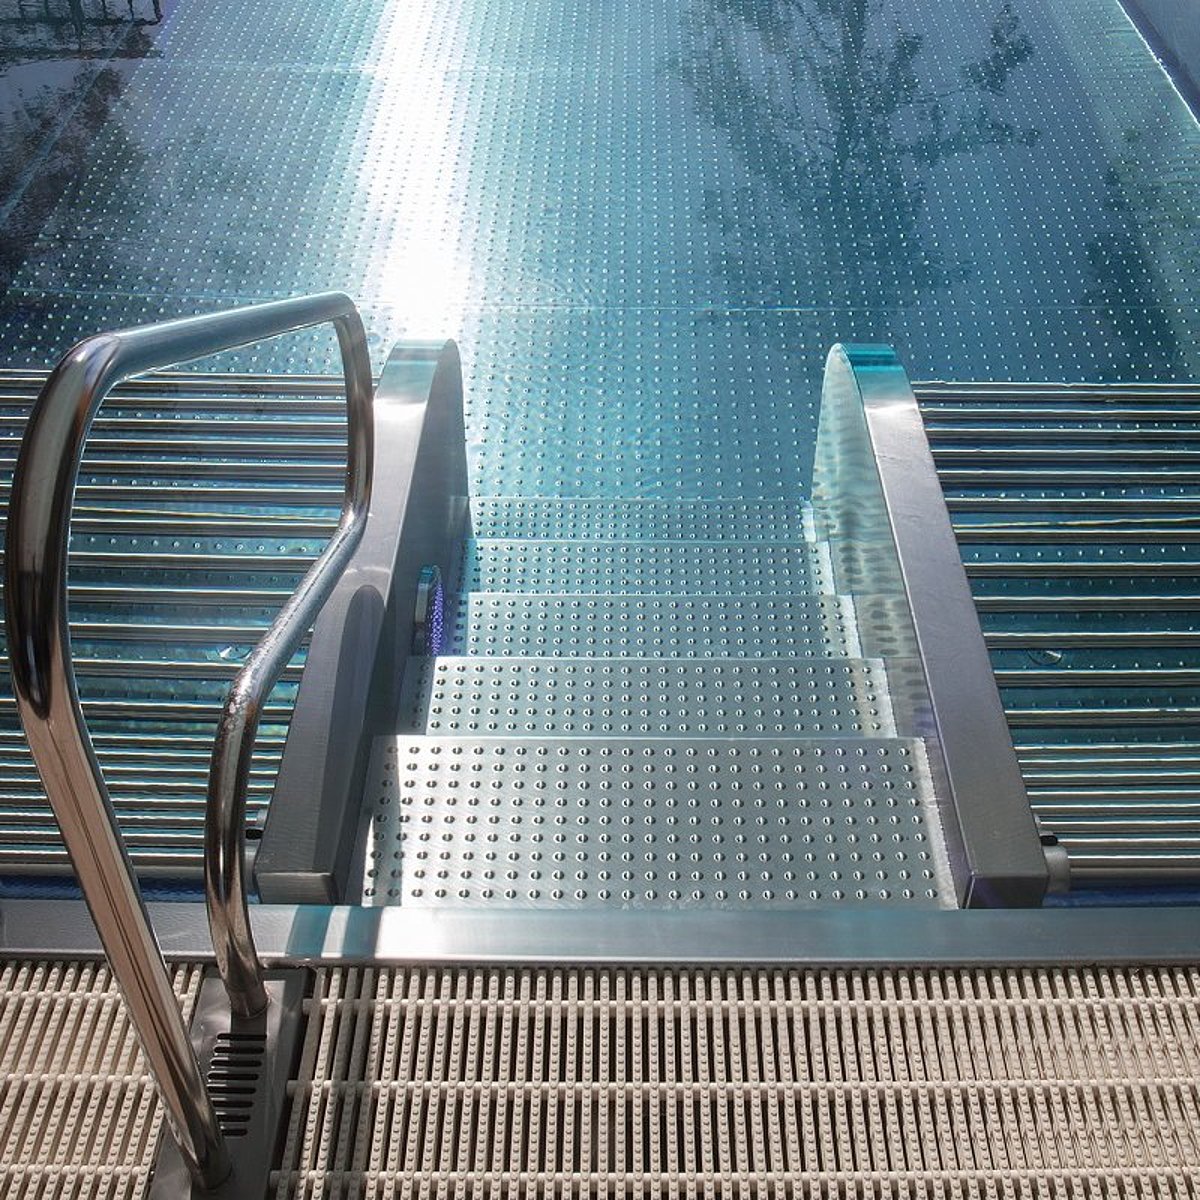 Ein Outdoor-Pool aus Edelstahl mit Einstiegstreppe, die über einen Handlauf verfügt. Links und rechts neben der Treppe befindet sich jeweils eine Sprudelliege.